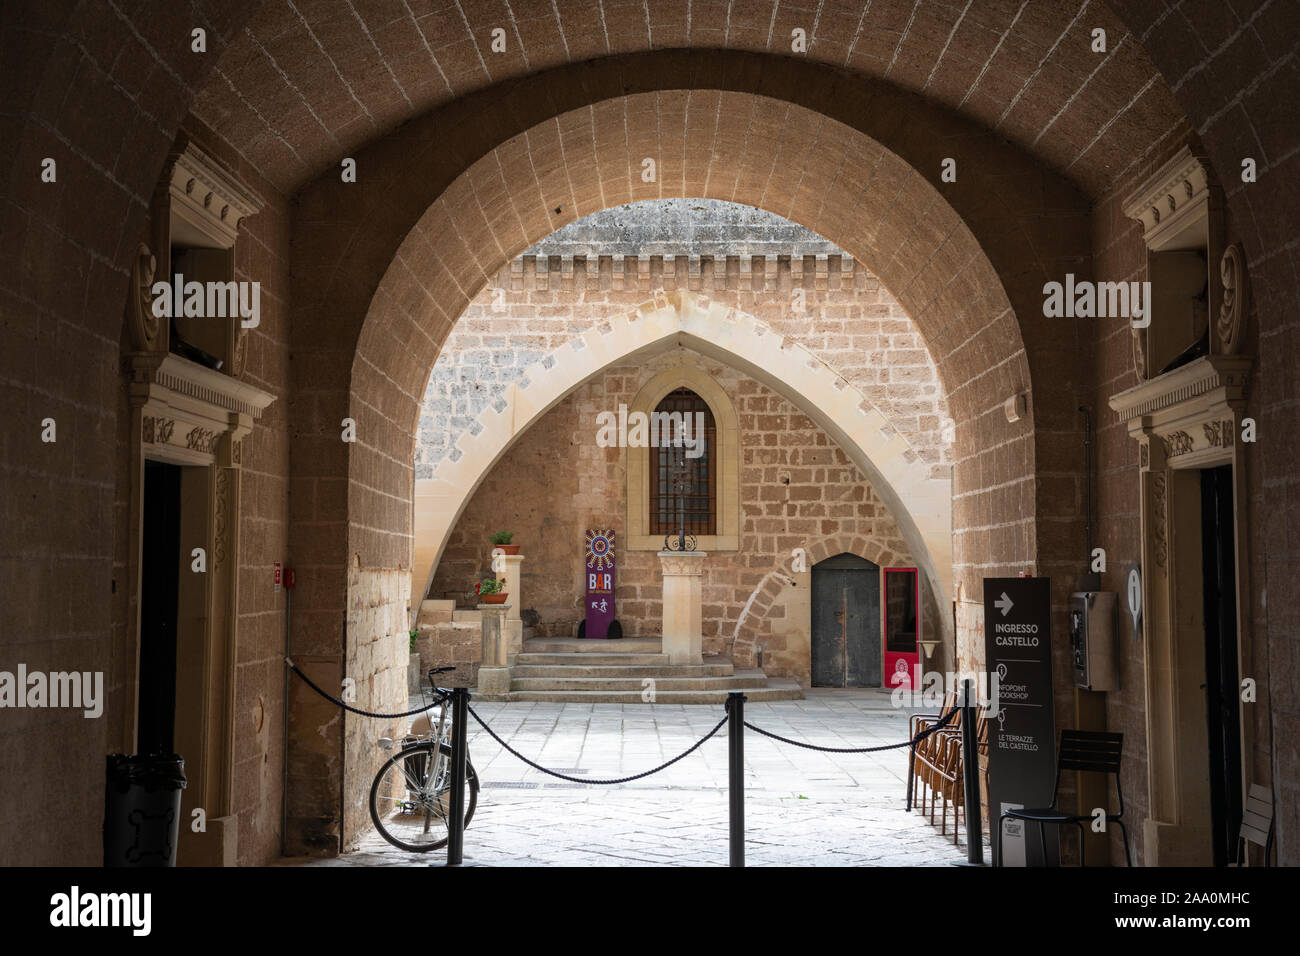 View through entrance to courtyard of Castello de’ Monti in Corigliano d'Otranto, Apulia (Puglia) in Southern Italy Stock Photo